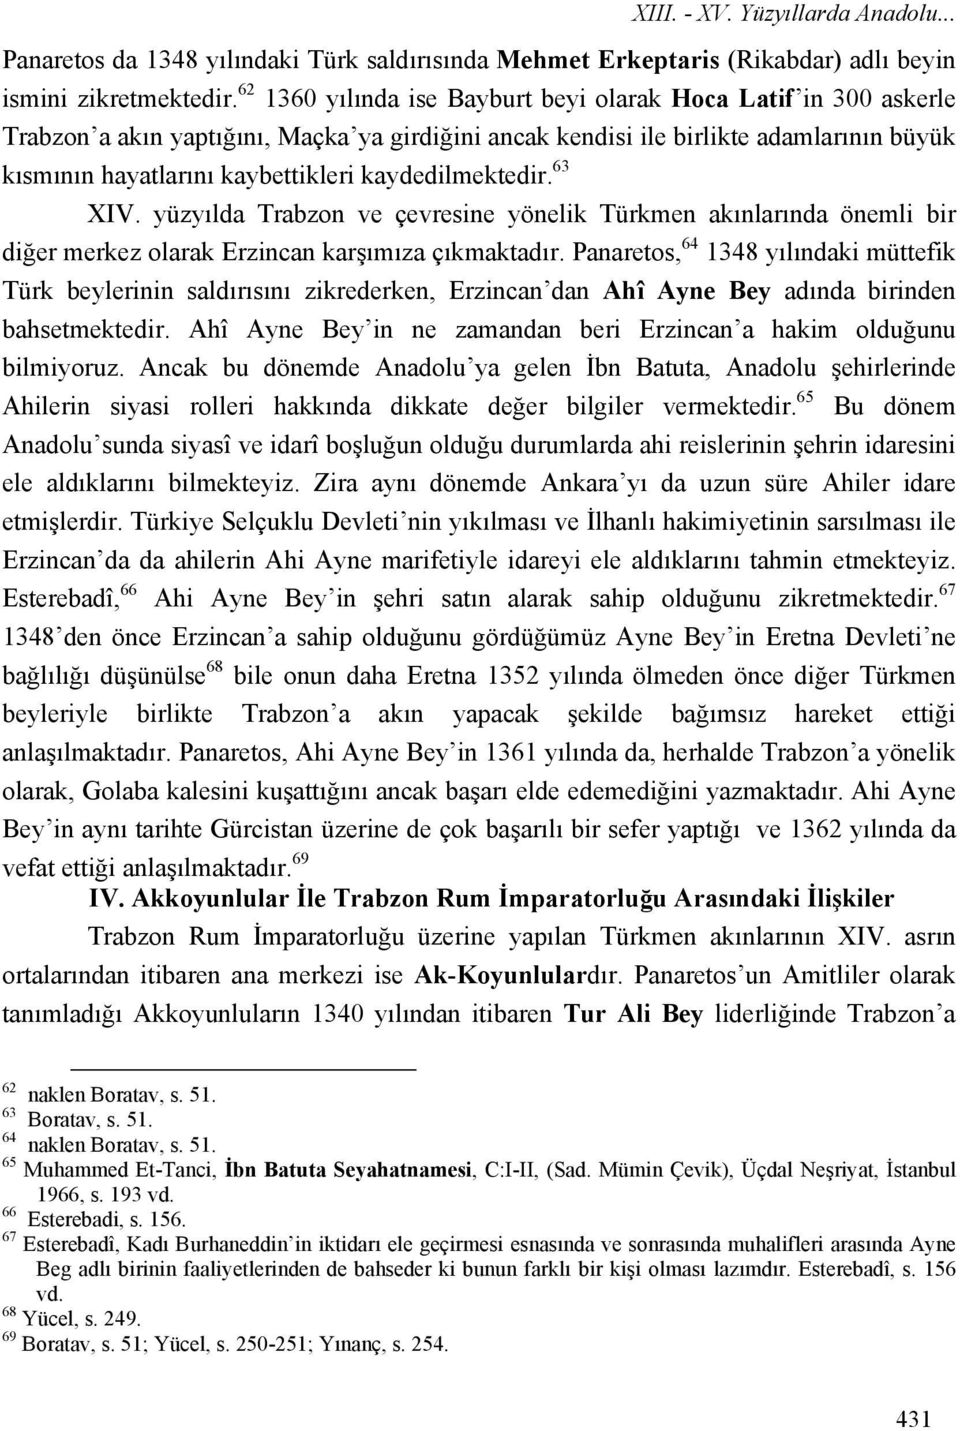 kaydedilmektedir. 63 XIV. yüzyılda Trabzon ve çevresine yönelik Türkmen akınlarında önemli bir diğer merkez olarak Erzincan karşımıza çıkmaktadır.